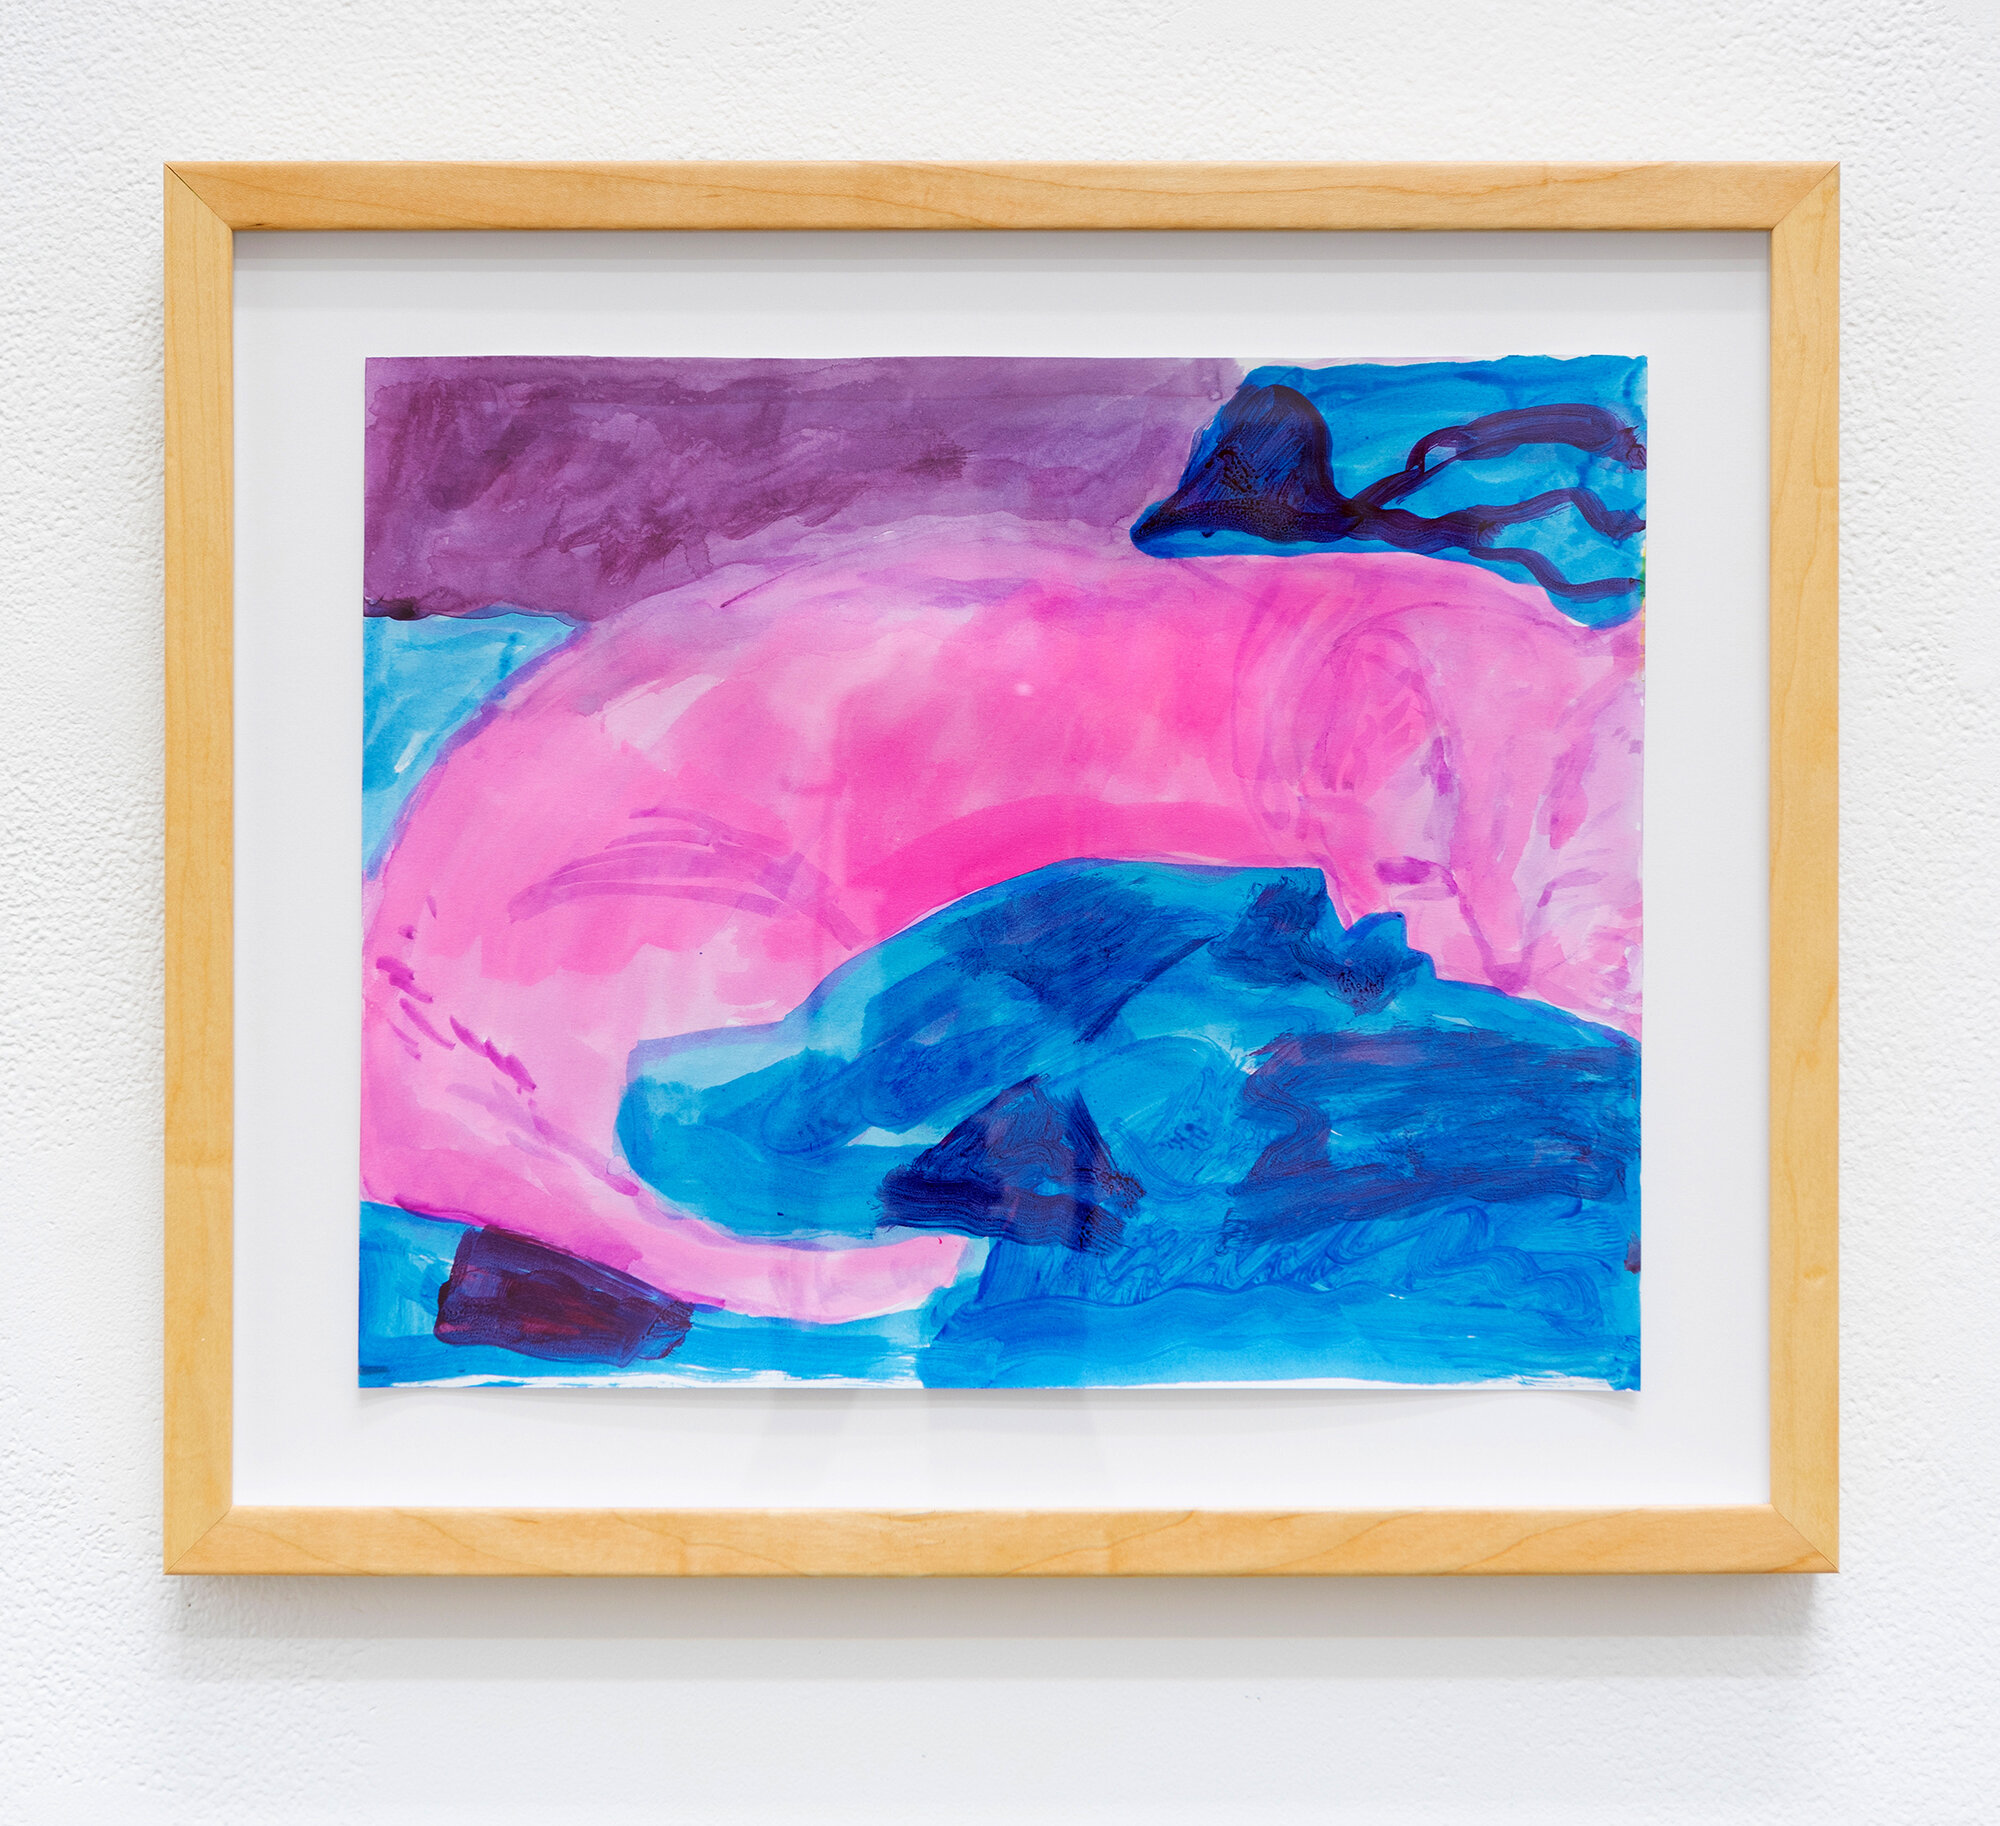 Queenie Resting (pink/blue), 2020